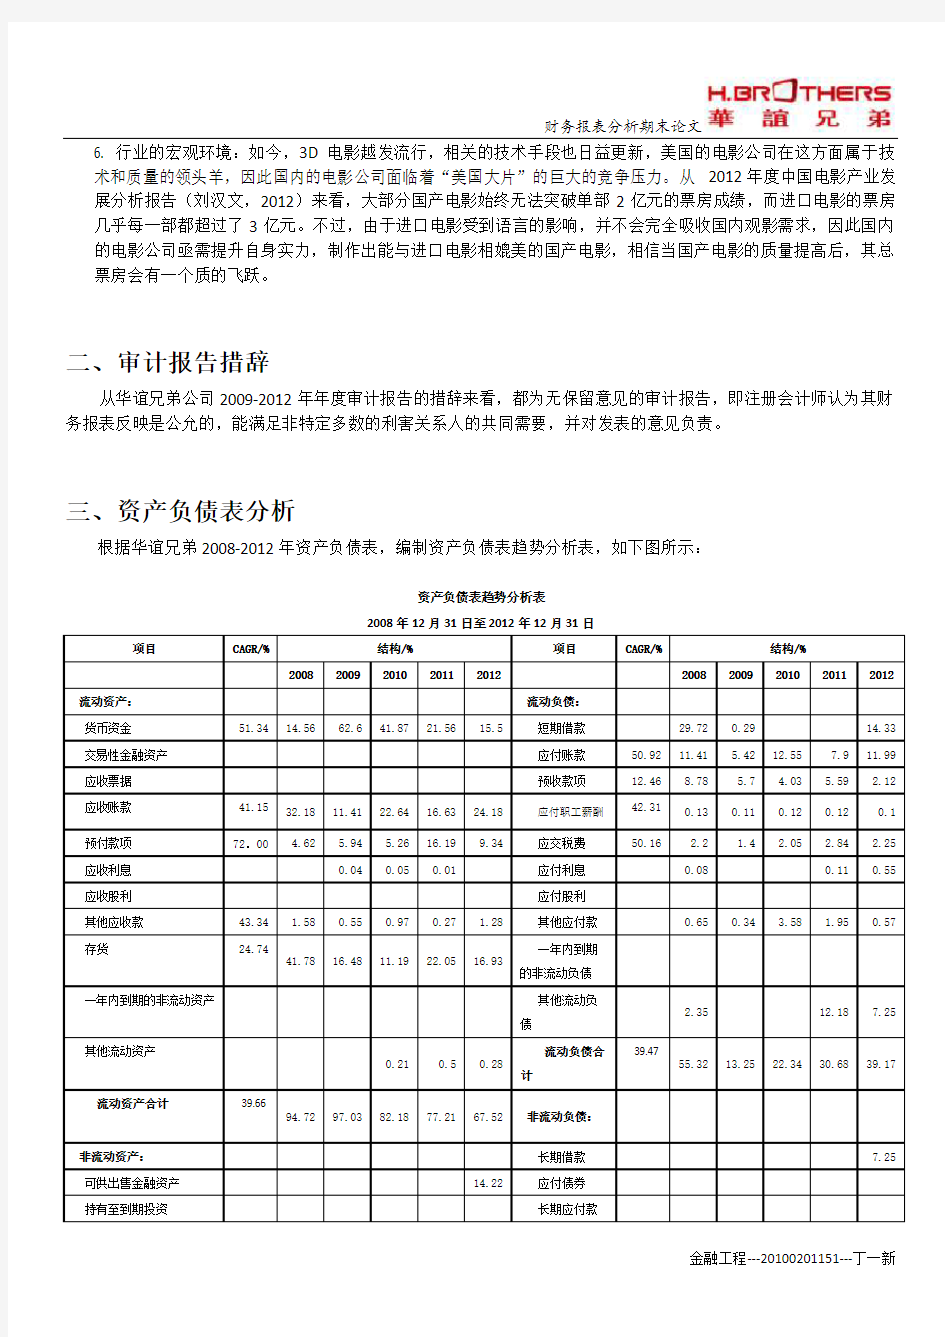 2008-2012年华谊兄弟财务报表综合分析